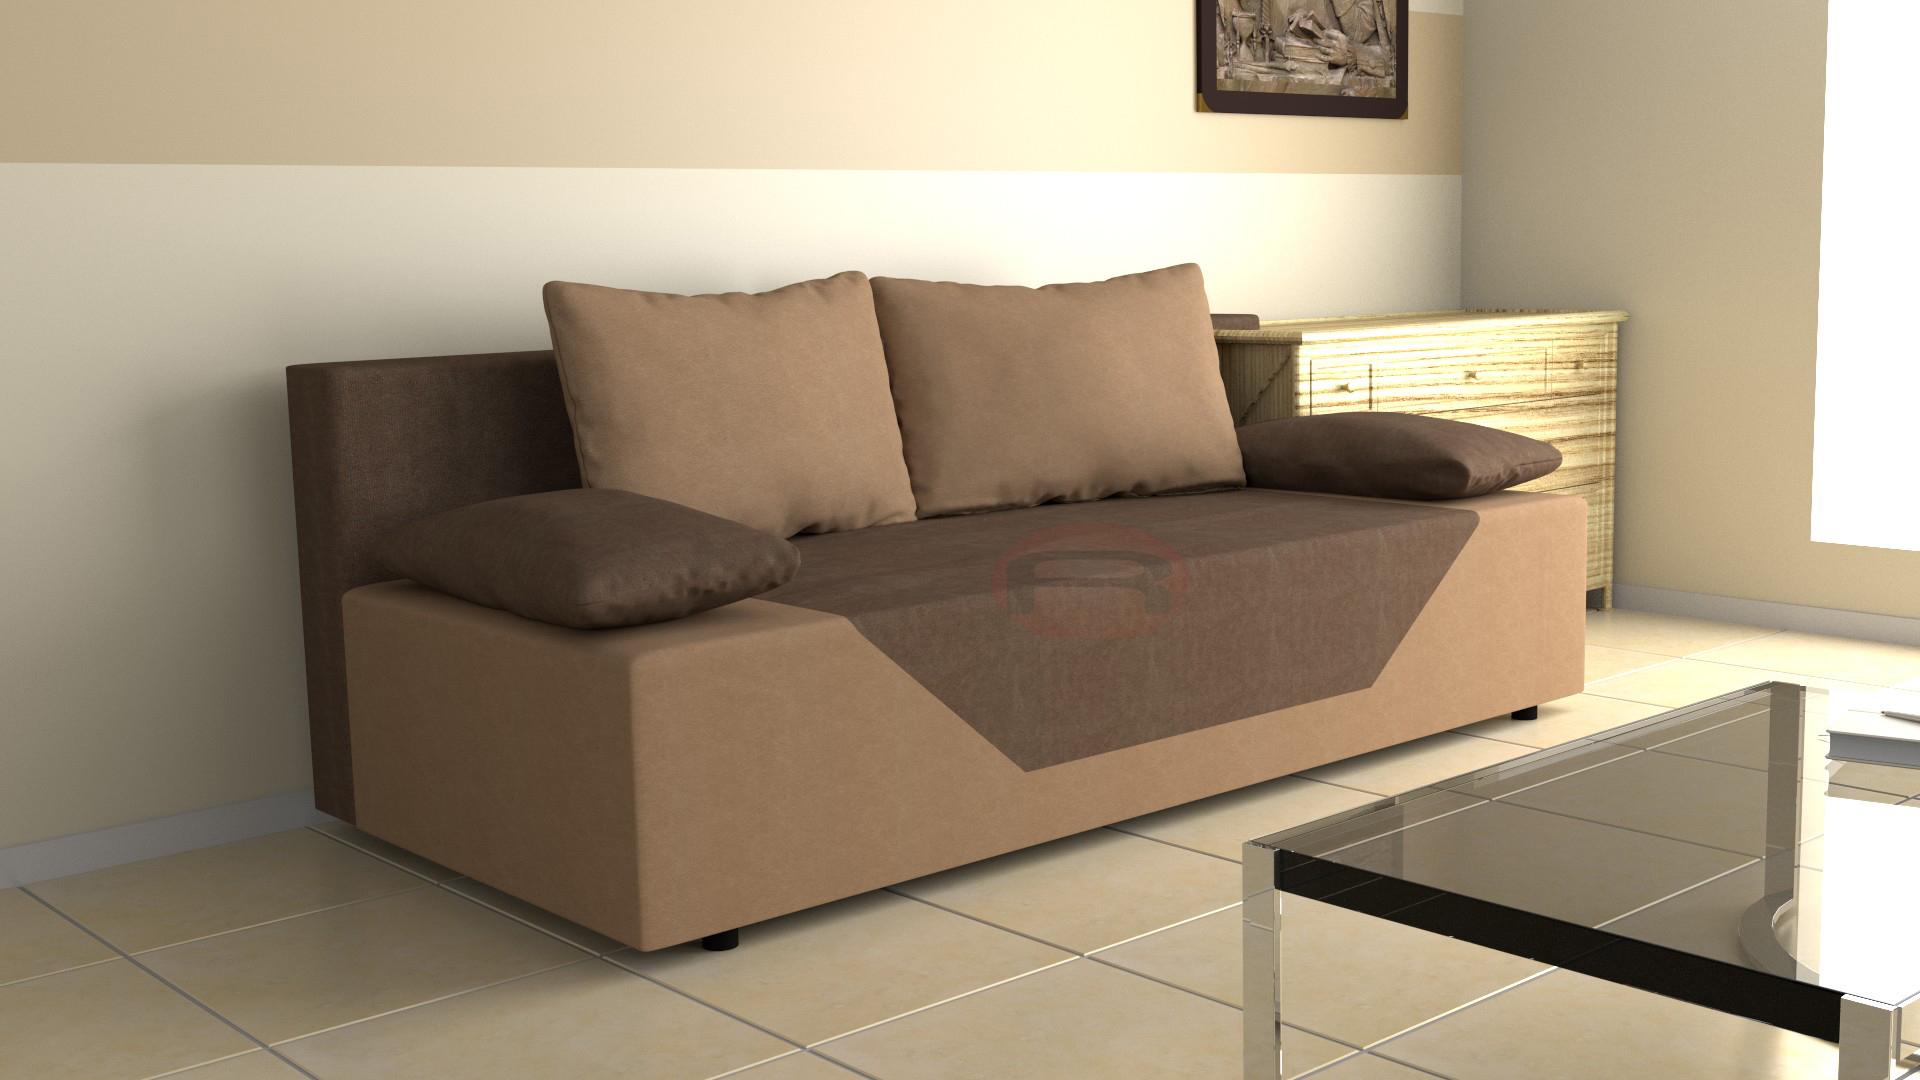 KANAPA RONALDO sofa tapczan wersalka łóżko